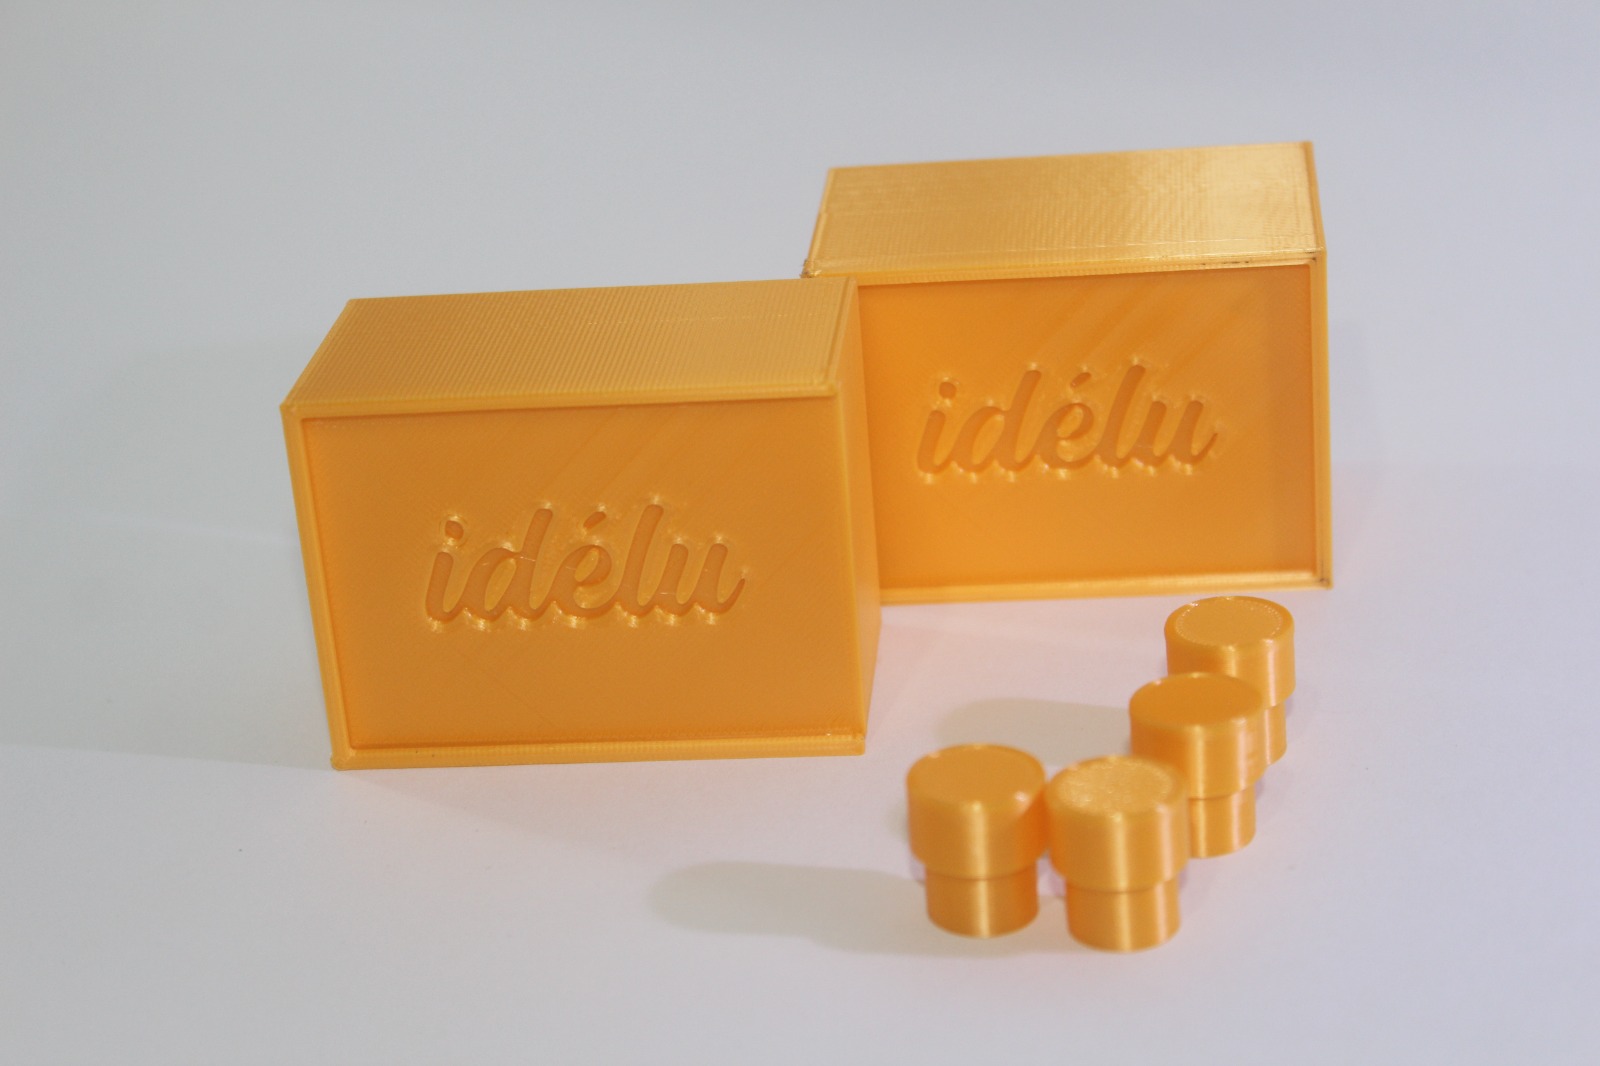 Dos cajas amarillas con el logo nominativo de Idélu y cuatro pequeñas fichas circulares del mismo color al lado, las fichas siendo más delgadas en la parte inferior